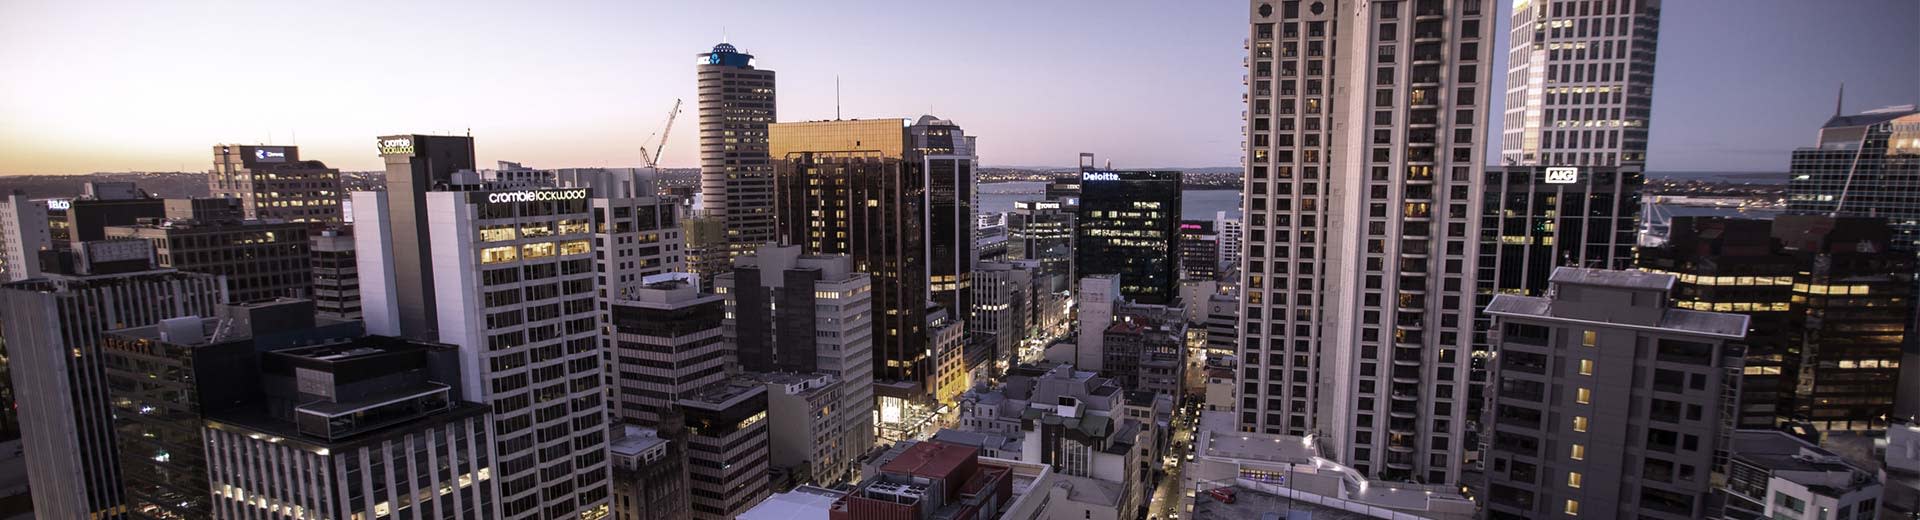 Auckland City Skyline au crépuscule, avec des gratte-ciel dominant le premier plan.